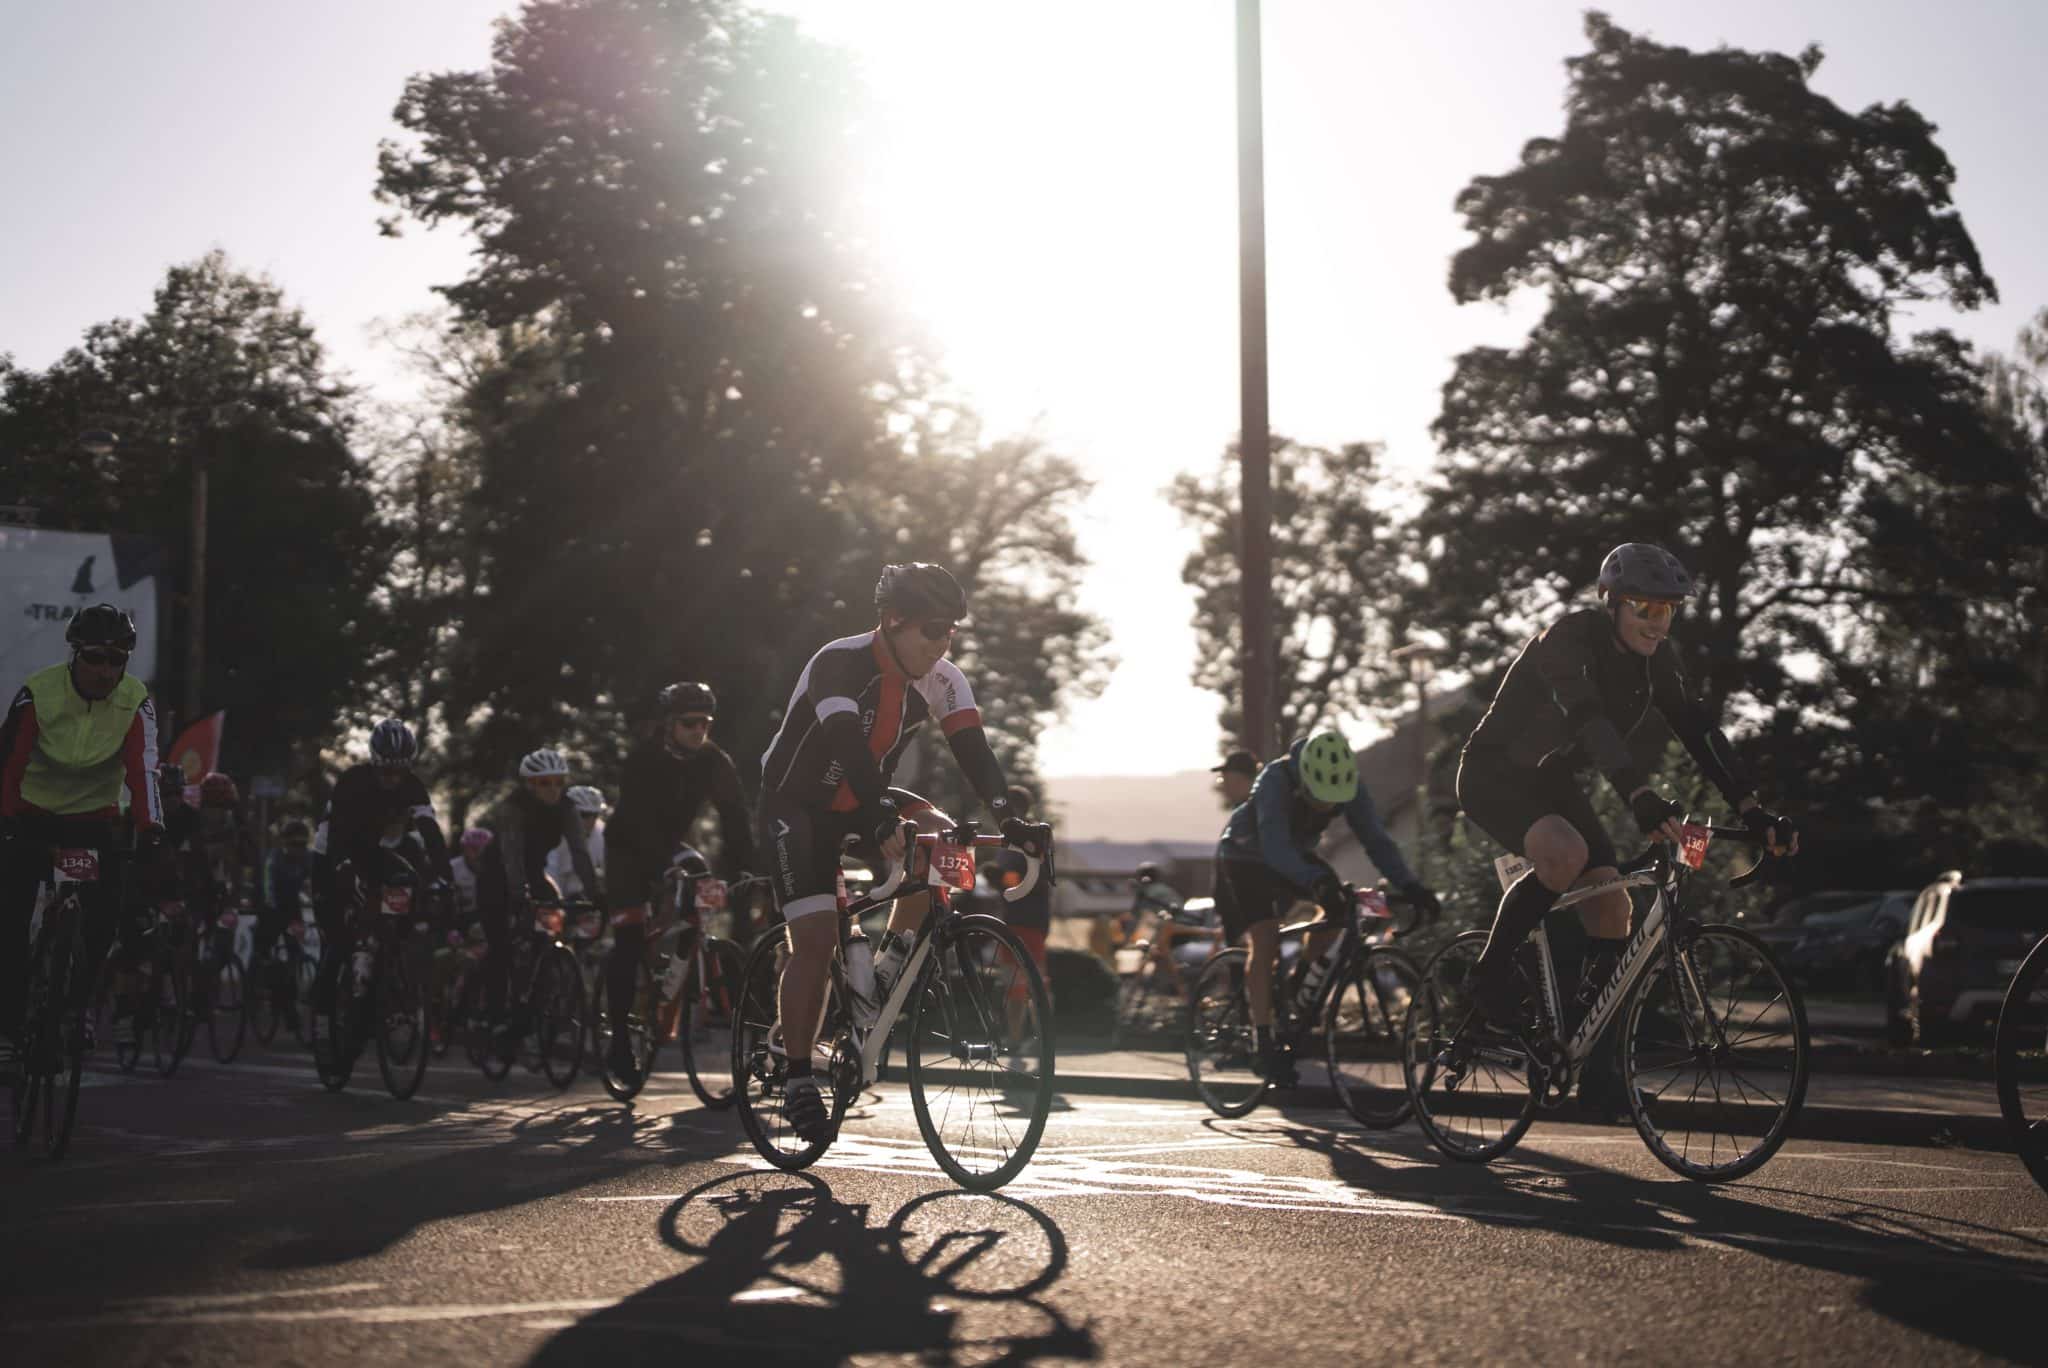 The Transju Cyclo bike races in the Jura